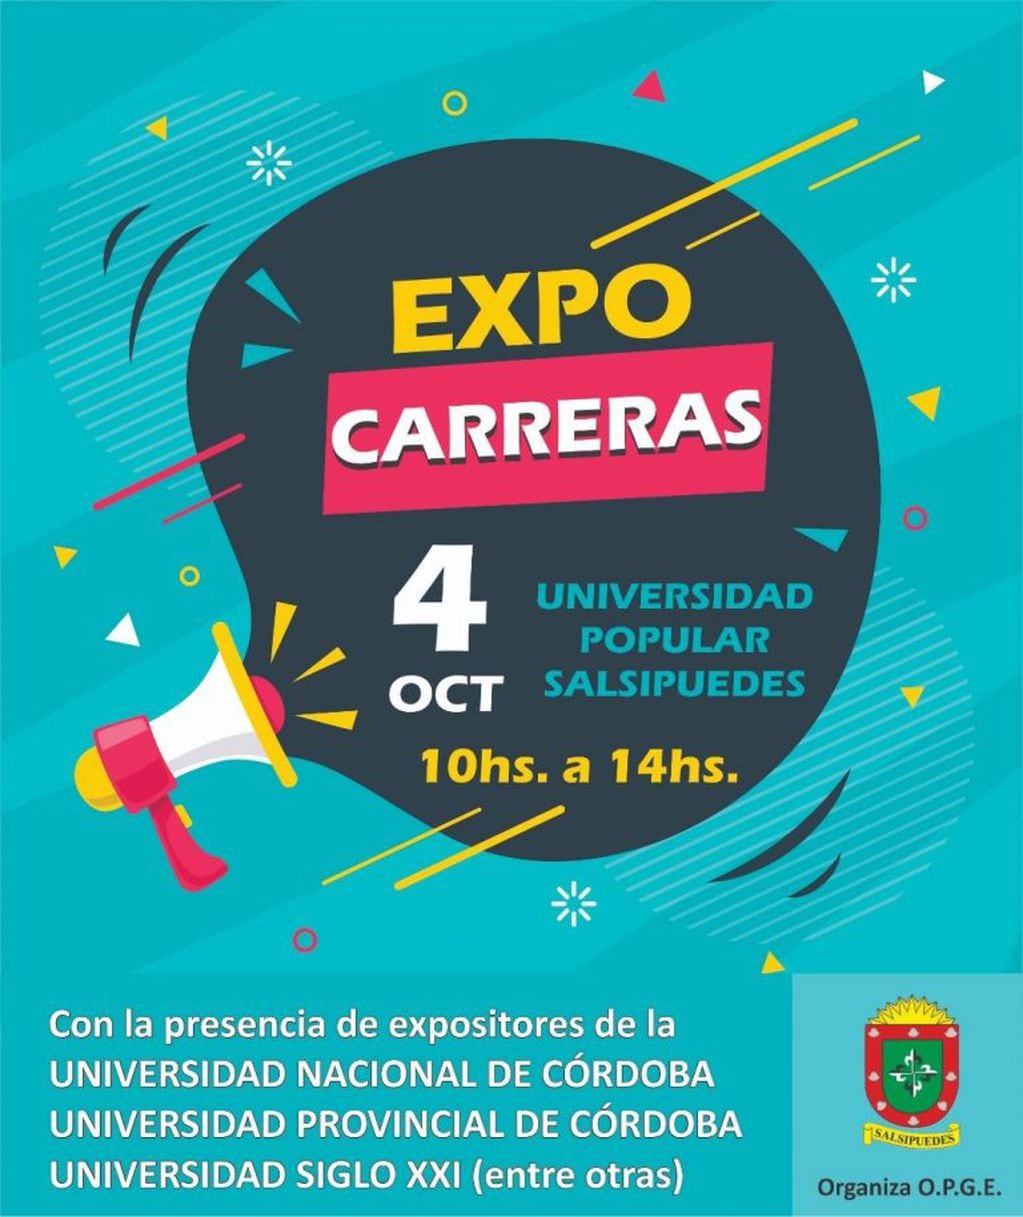 Expo Carreras (Salsipuedes)